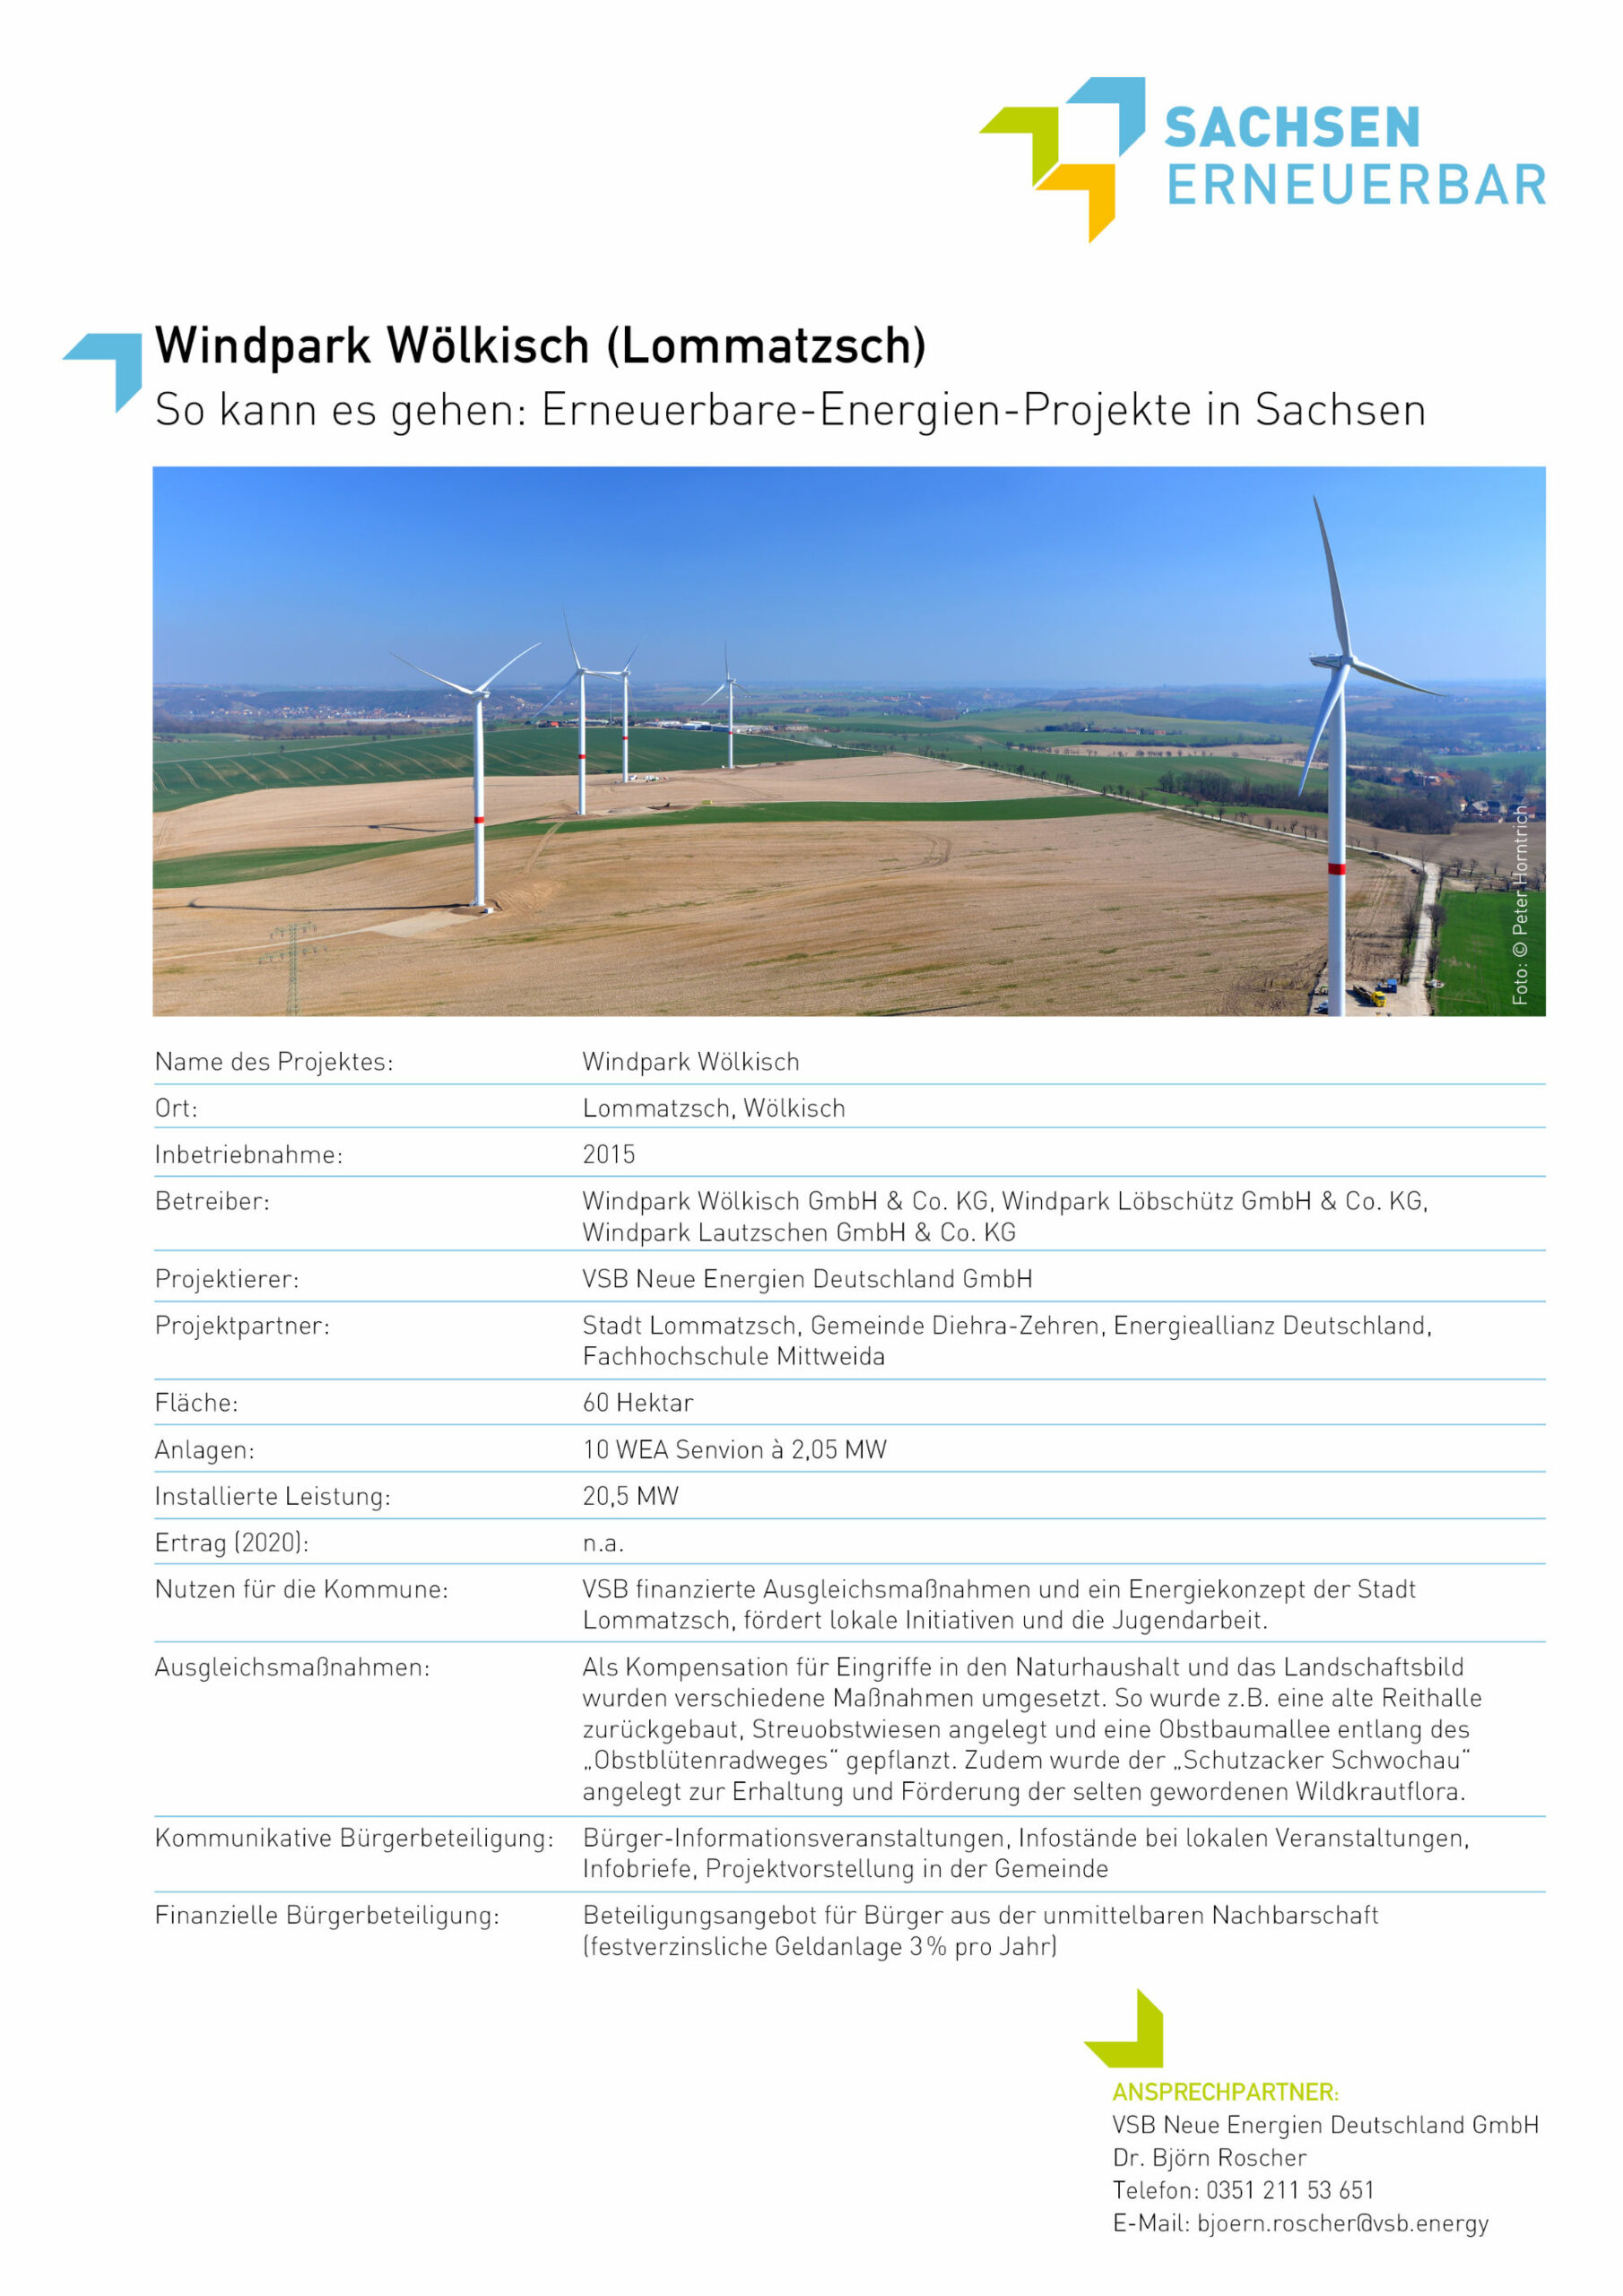 Beispiele für Erneuerbare-Energien-Projekte - Windpark Wölkisch